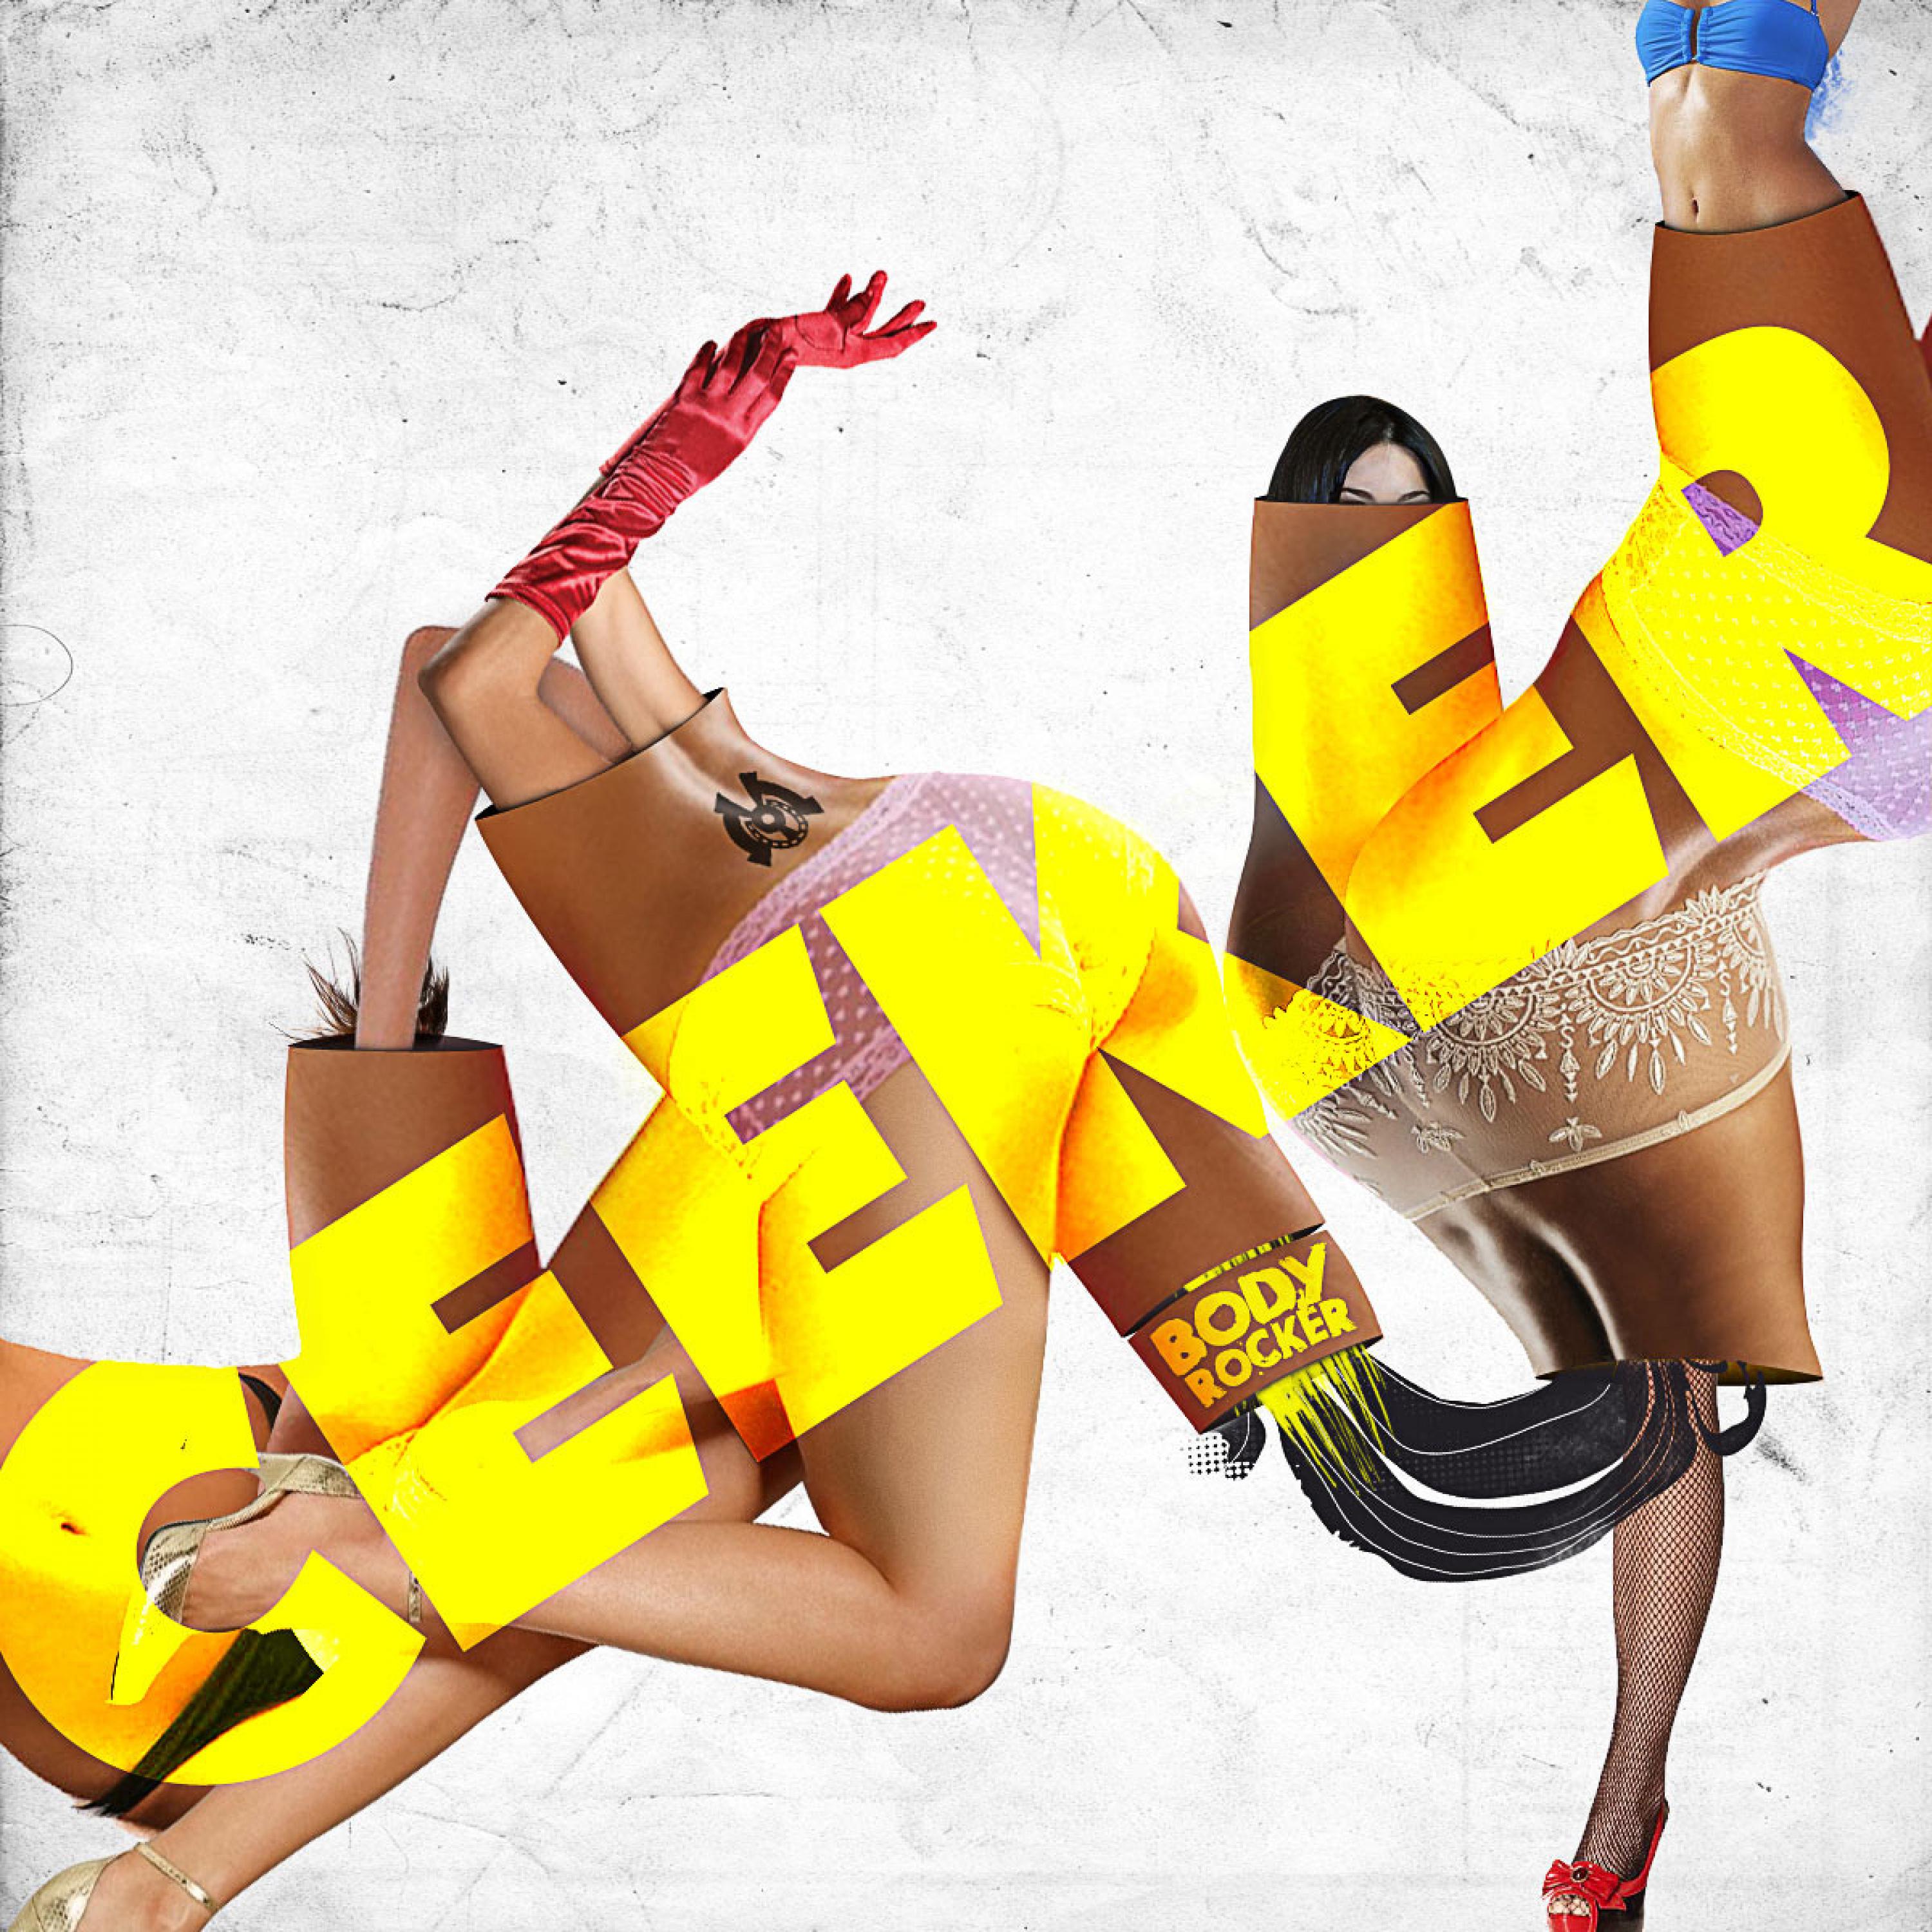 Ceeker - Body Rocker (Zenodub Remix)